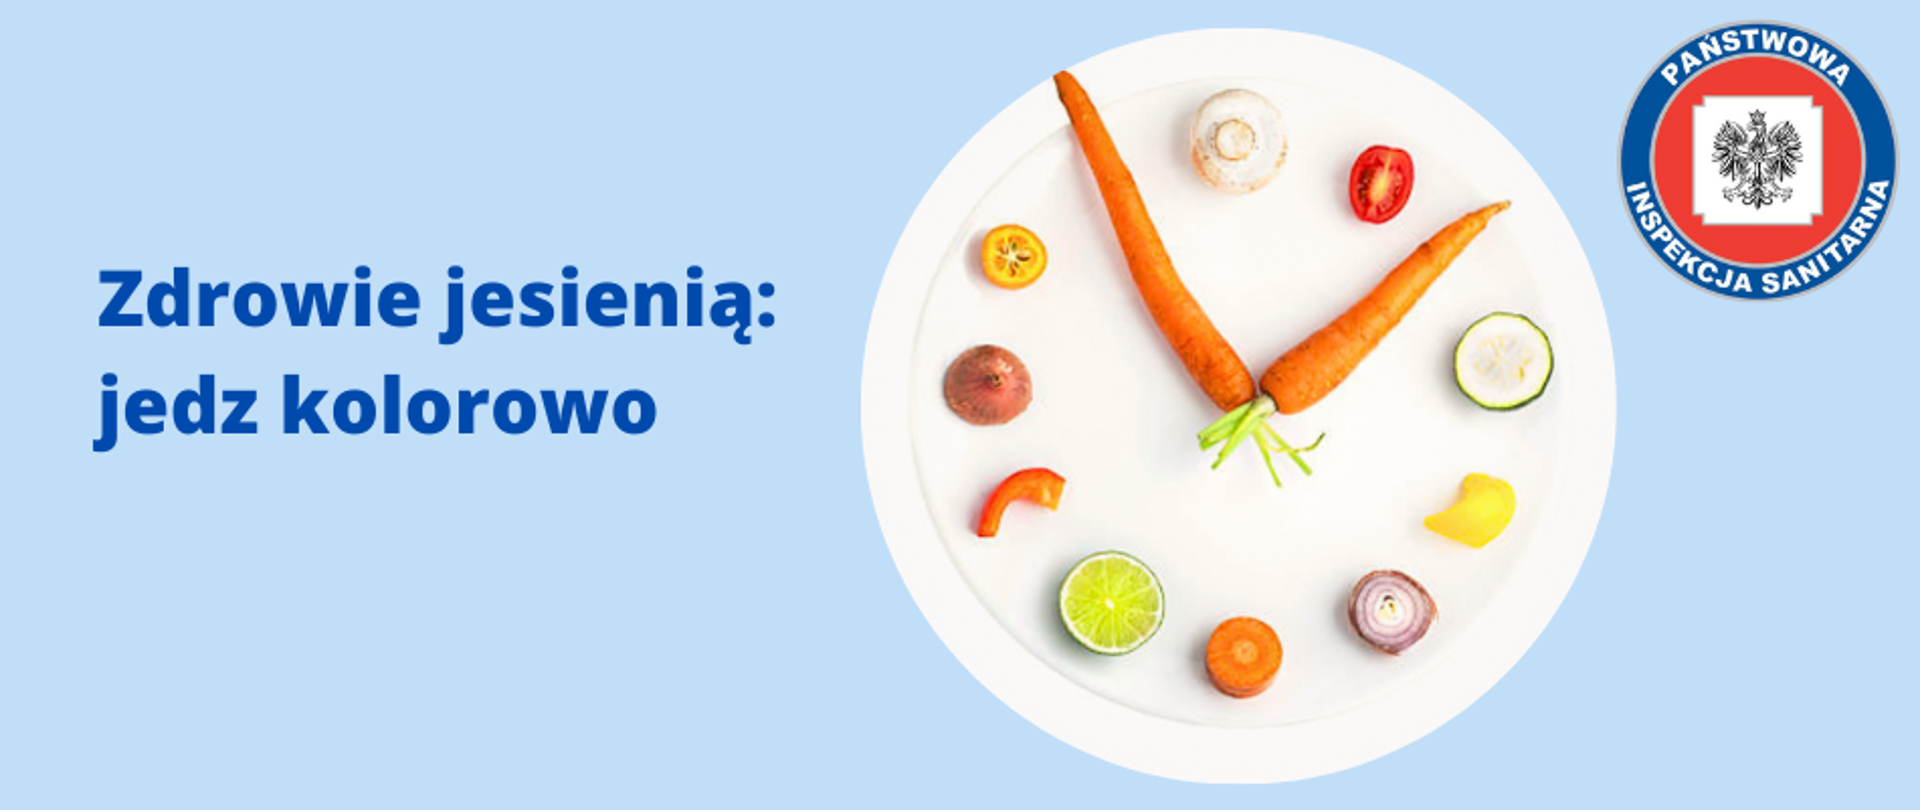 Zdjęcie przedstawia tytuł "Zdrowie jesienią jedz kolorowo LOGO", obrazek zegara z warzyw i owoców oraz logo Państwowej Inspekcji Sanitarnej